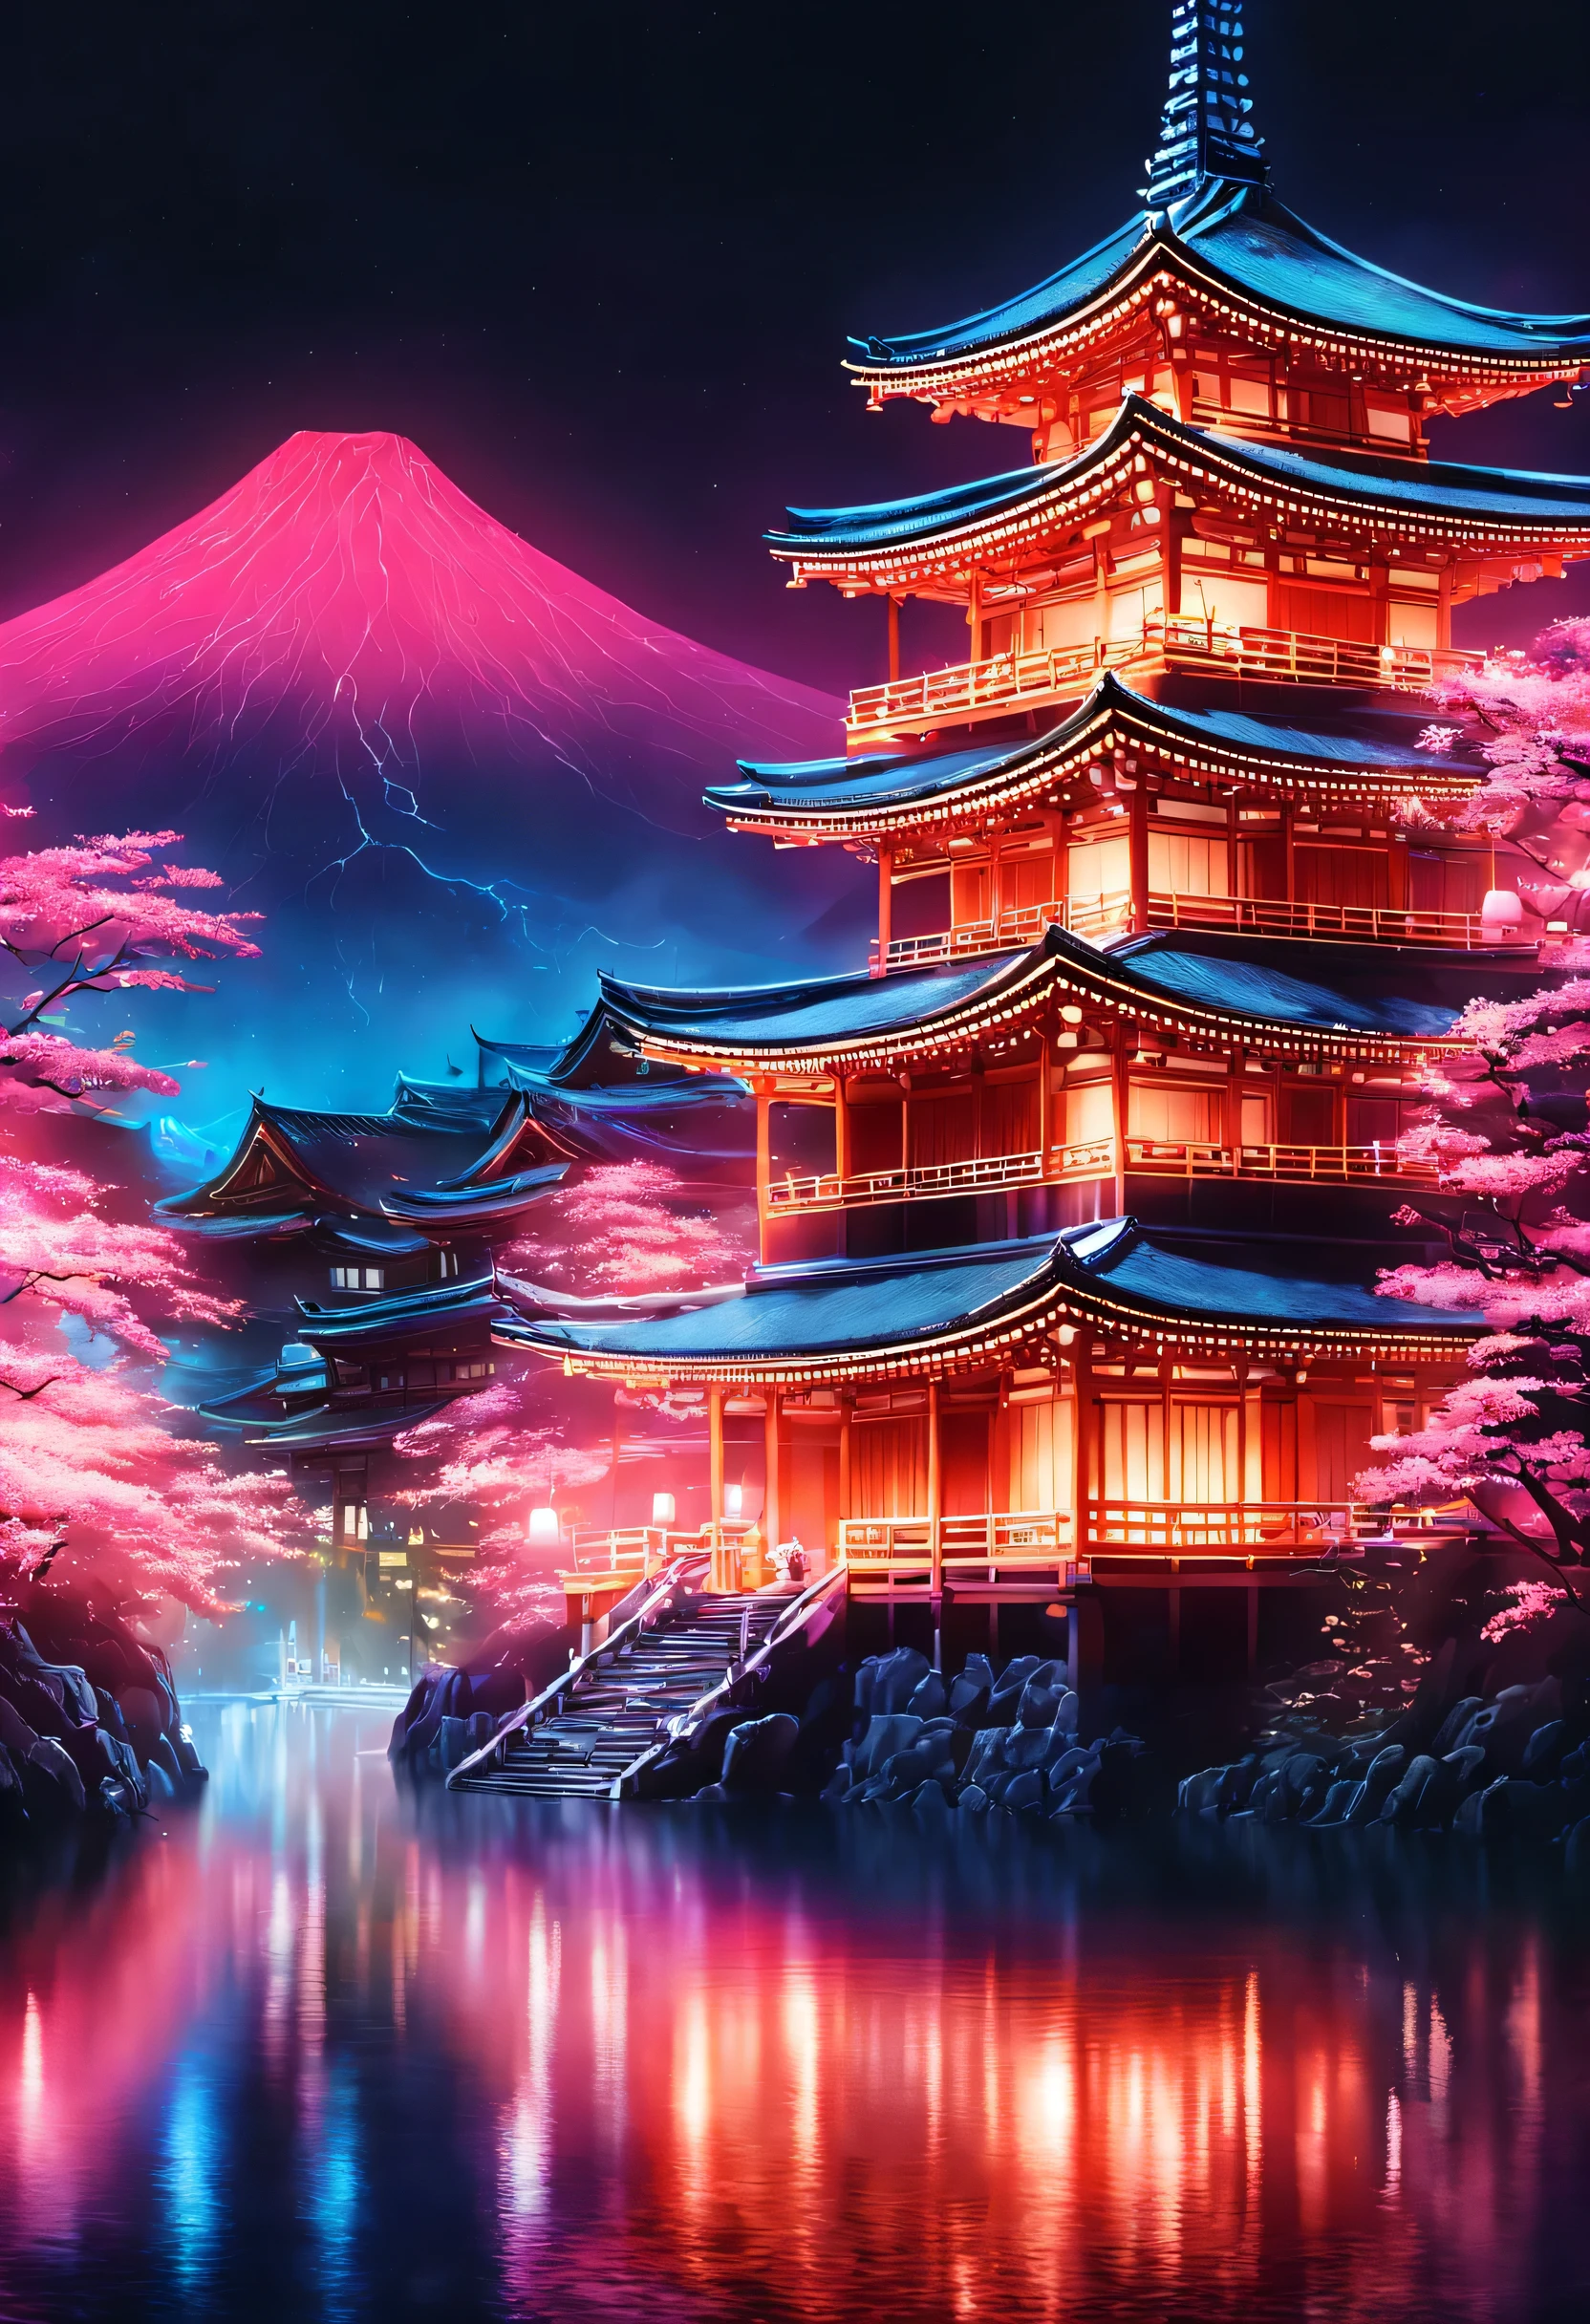 ヴェイパーウェイヴの美学,ネオンカラーで描く国さん,京都,Kiyomizu temple,二年坂周辺,国,最高にかわいい国さん,着物,Kiyomizu temple周辺を歩いている国さん,美しい,豊かな色彩,閃光,とても閃光,カラフルな呪文を唱える,暗い背景にネオンカラーで描く,古き良き日本の風景と現代アートの融合,ポップイラスト,ポスター,完璧な構成,日本を表現するデザイン,芸術作品